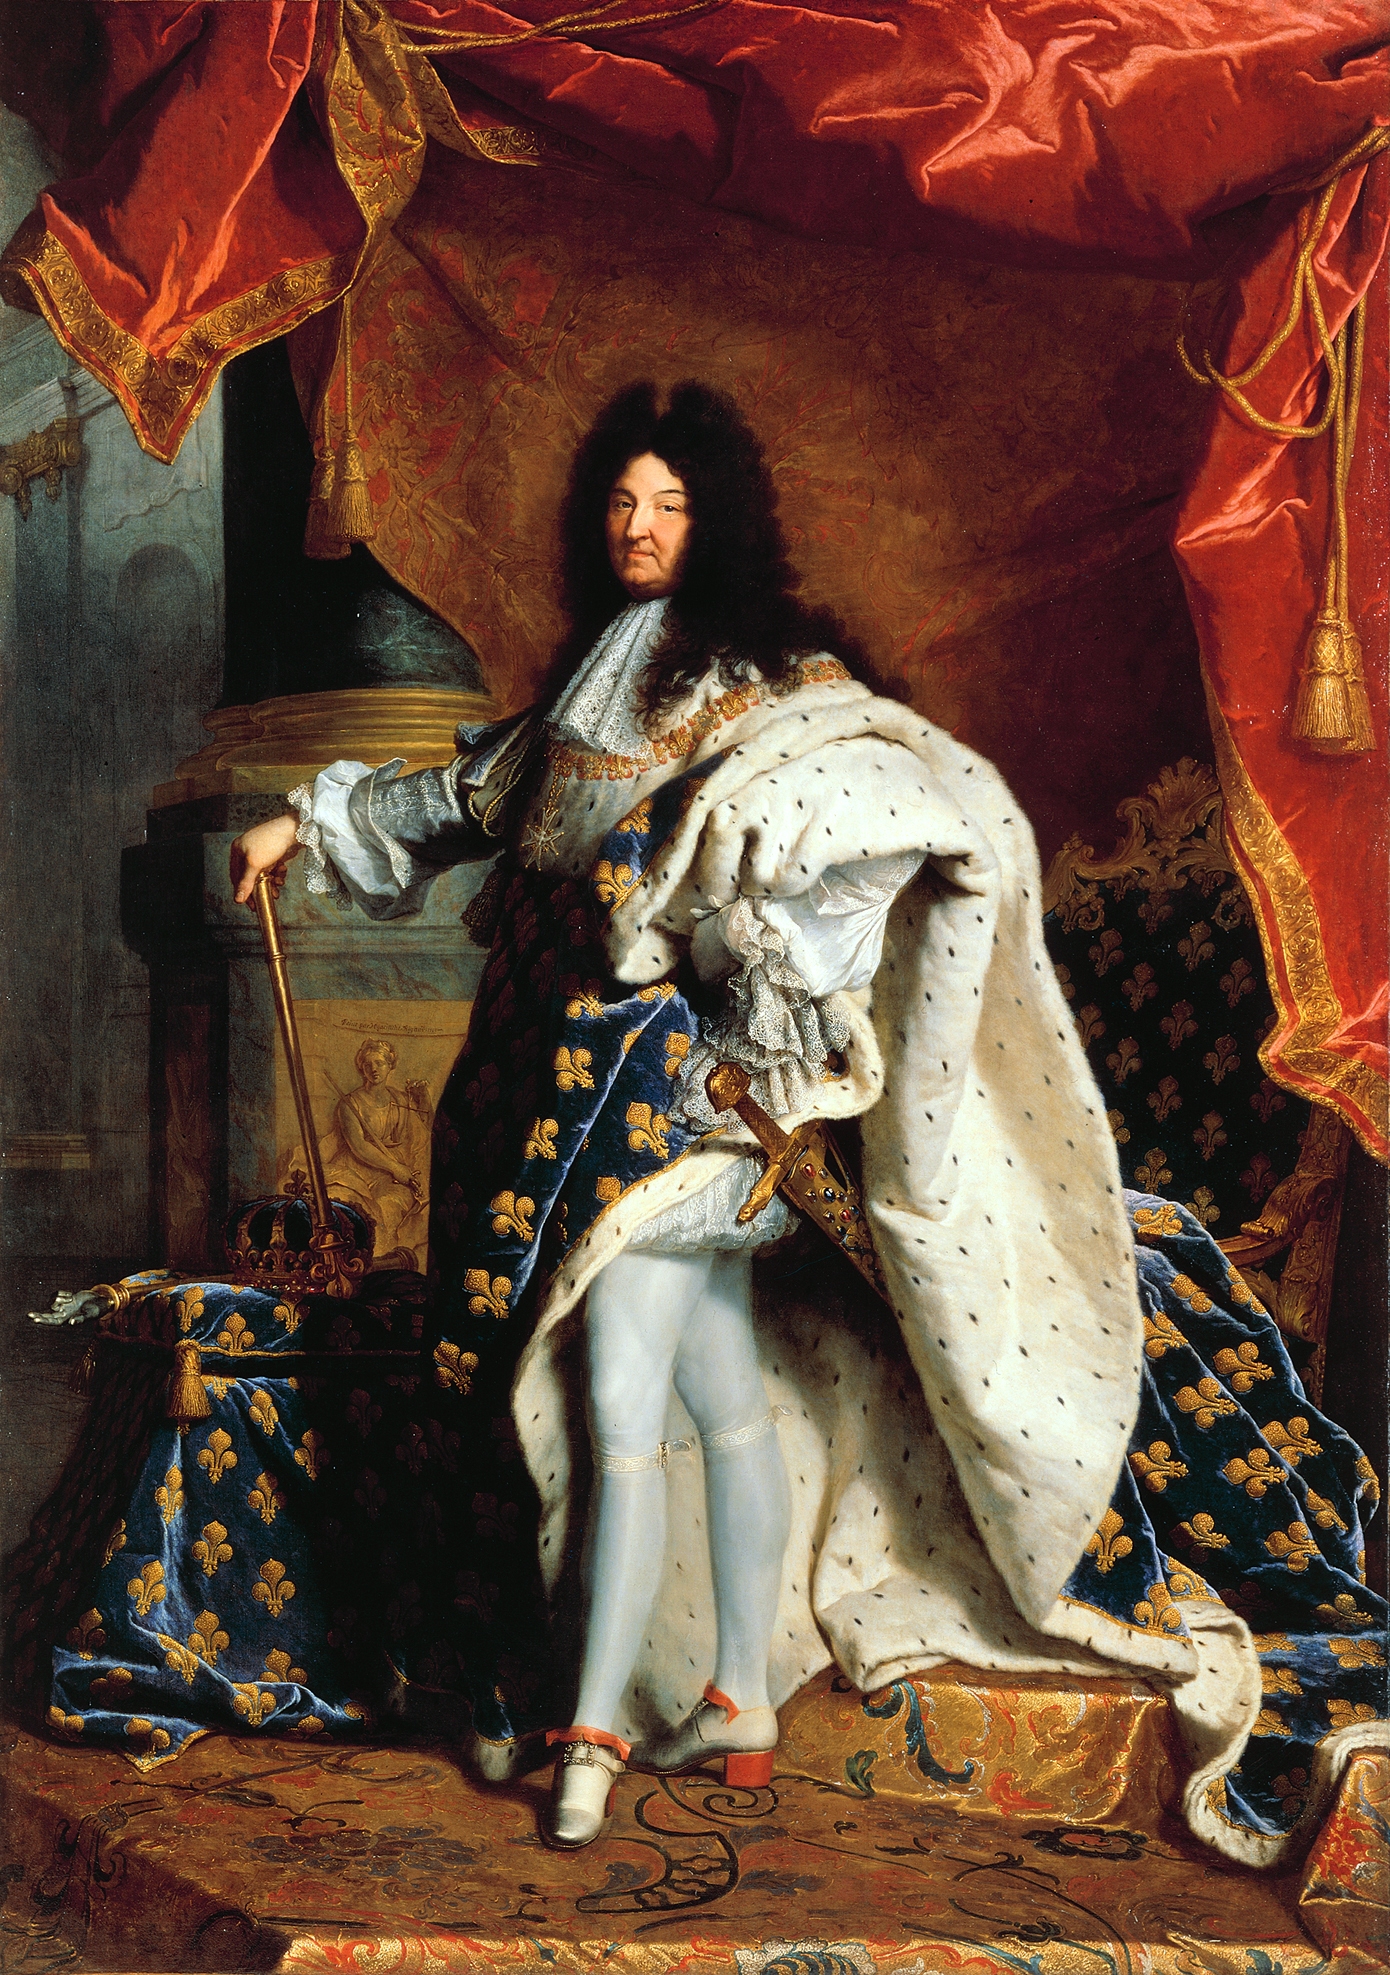 Trong bức tranh sơn dầu do Hyacinthe Rigaud thực hiện năm 1701, vua Louis XIV mặc áo khoác làm từ nhung và lông chồn ermine